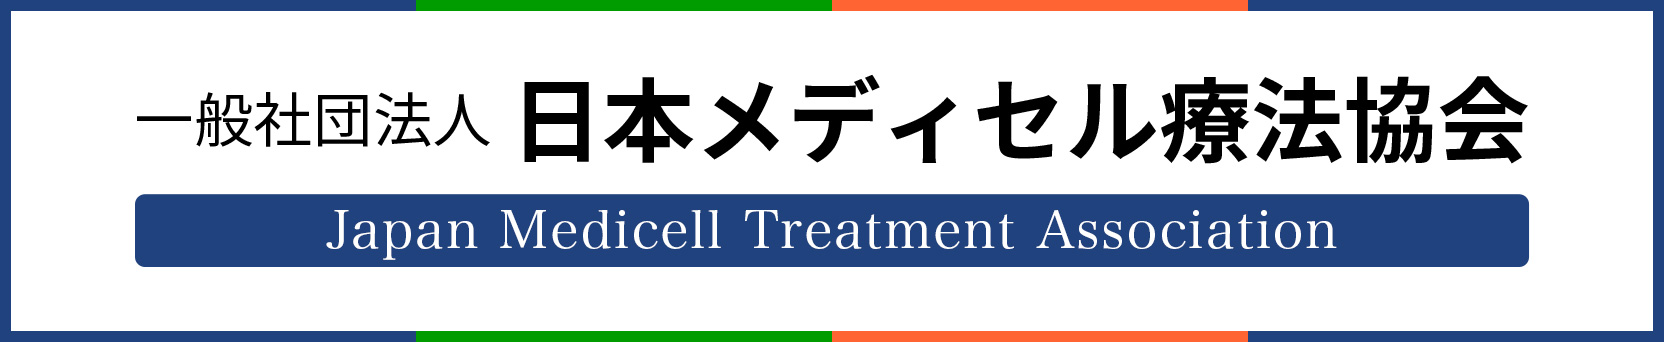 一般社団法人 日本メディセル療法協会 Japan Medicell Treatment Association